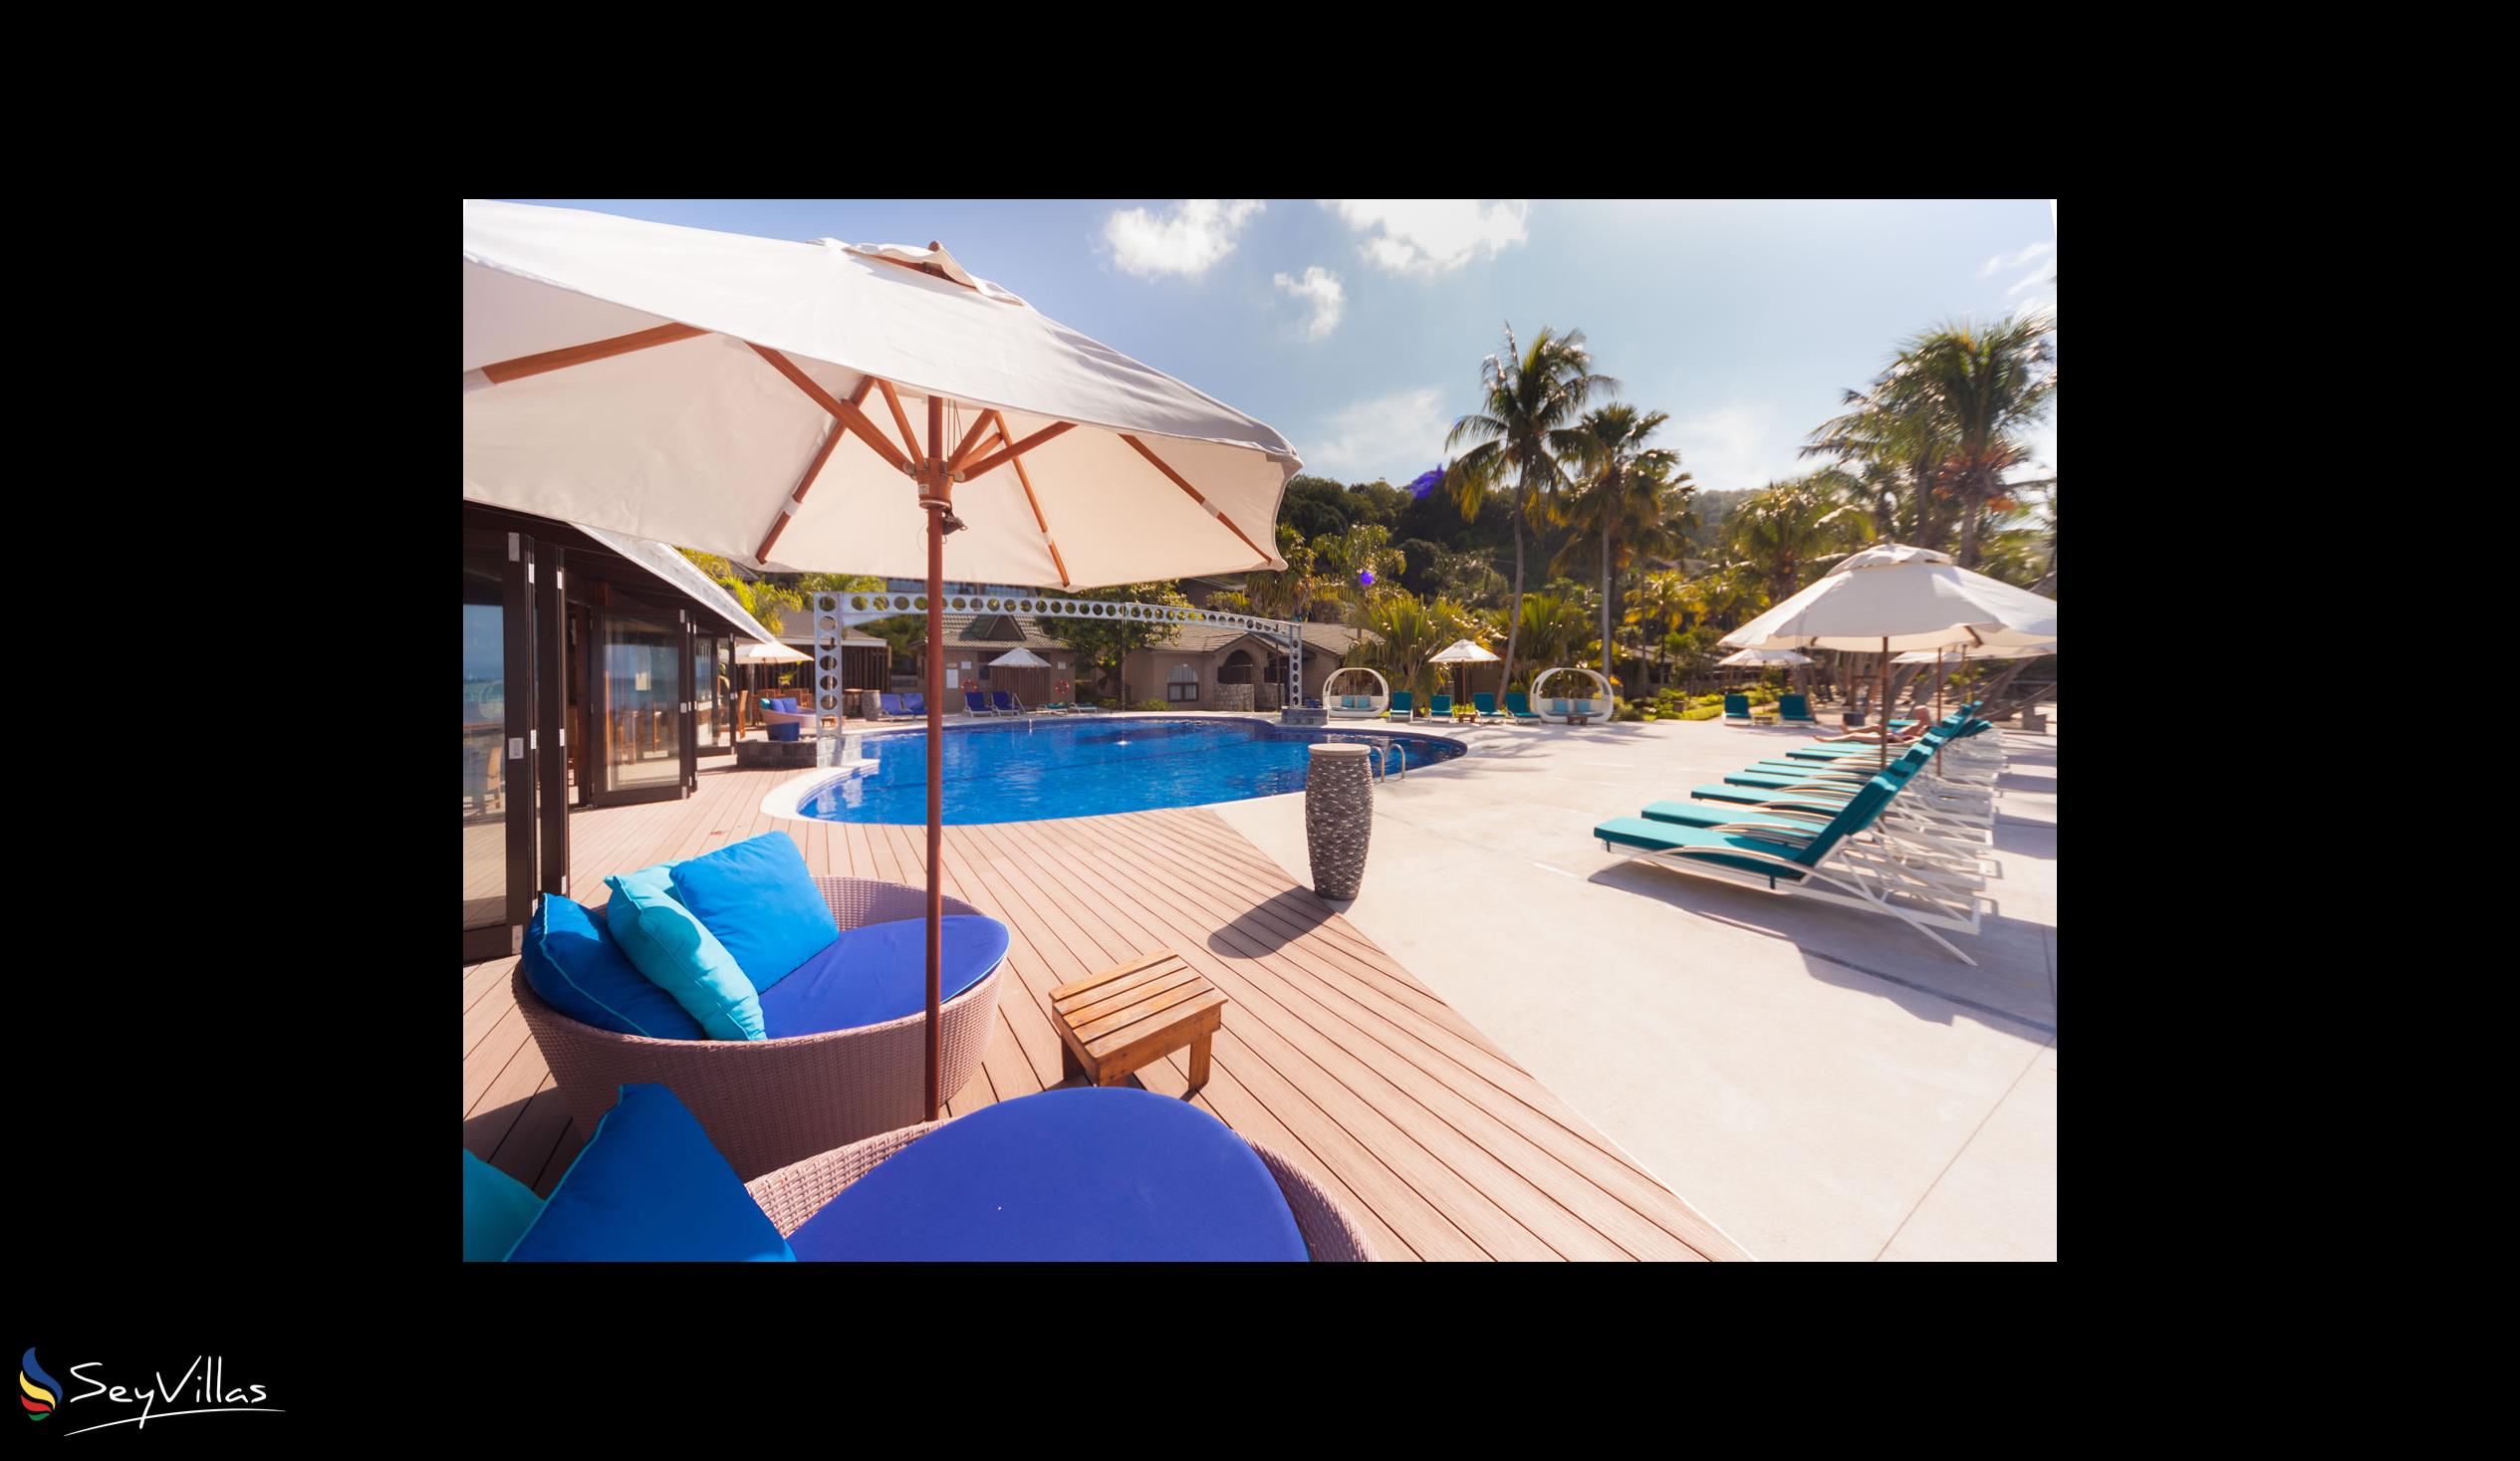 Foto 20: Coco de Mer & Black Parrot Suites - Aussenbereich - Praslin (Seychellen)